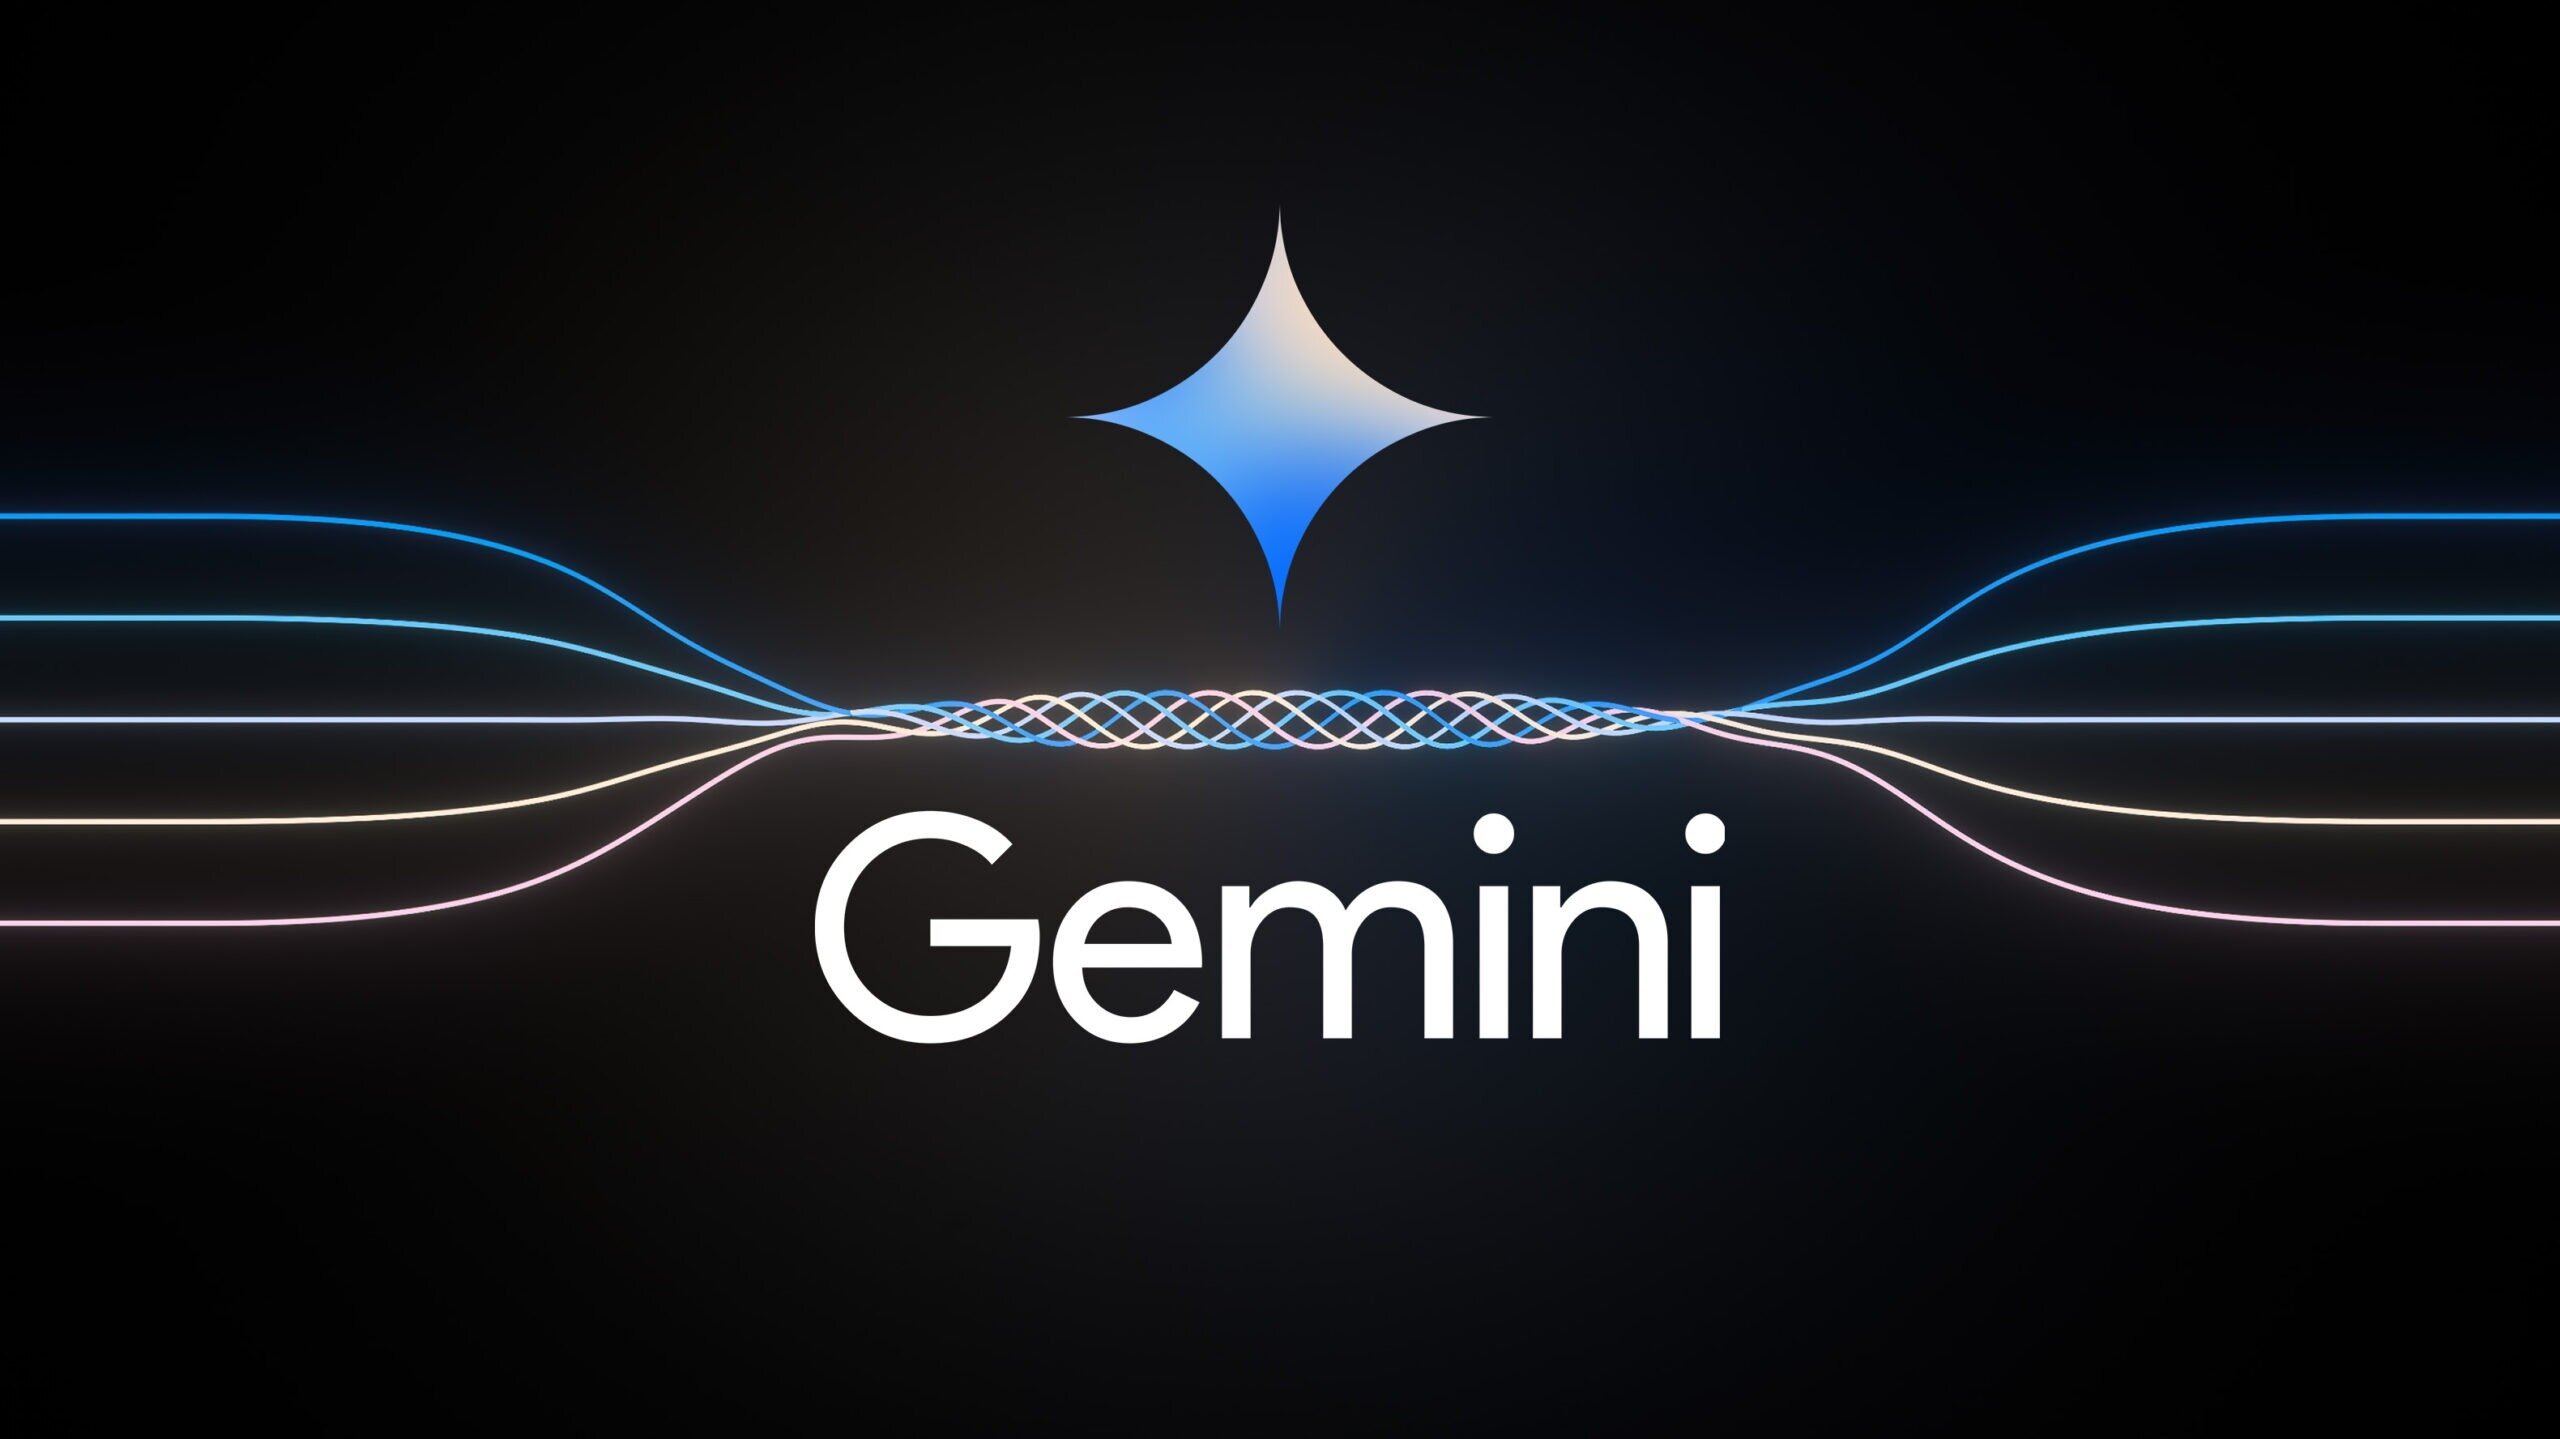 Σε αναστολή έθεσε η Google τη δυνατότητα δημιουργίας εικόνων από το Gemini